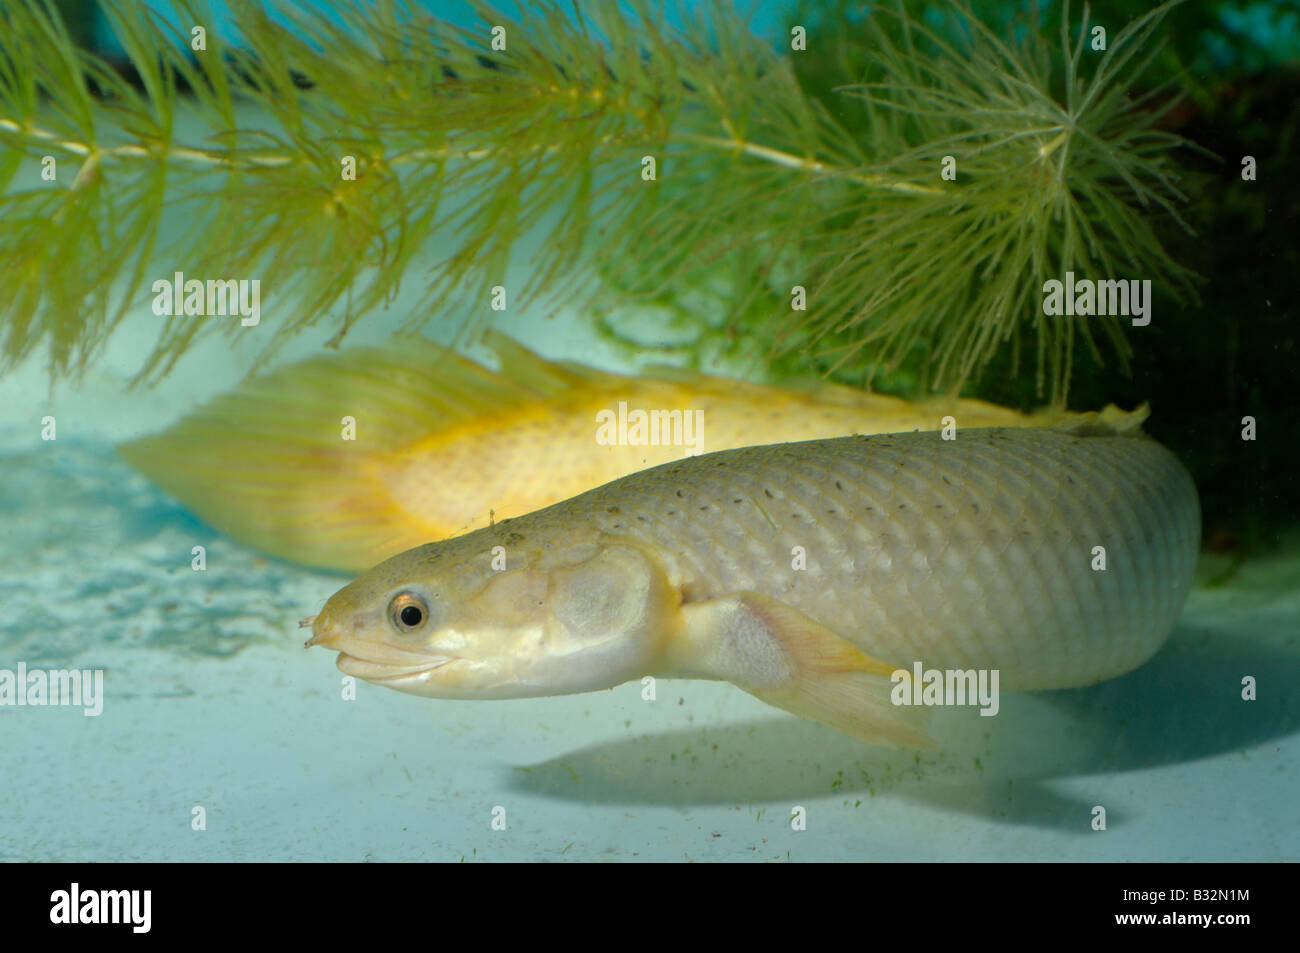 Reedfish, Ropefish, Snakefish (Erpetoichthys calabaricus) Stock Photo